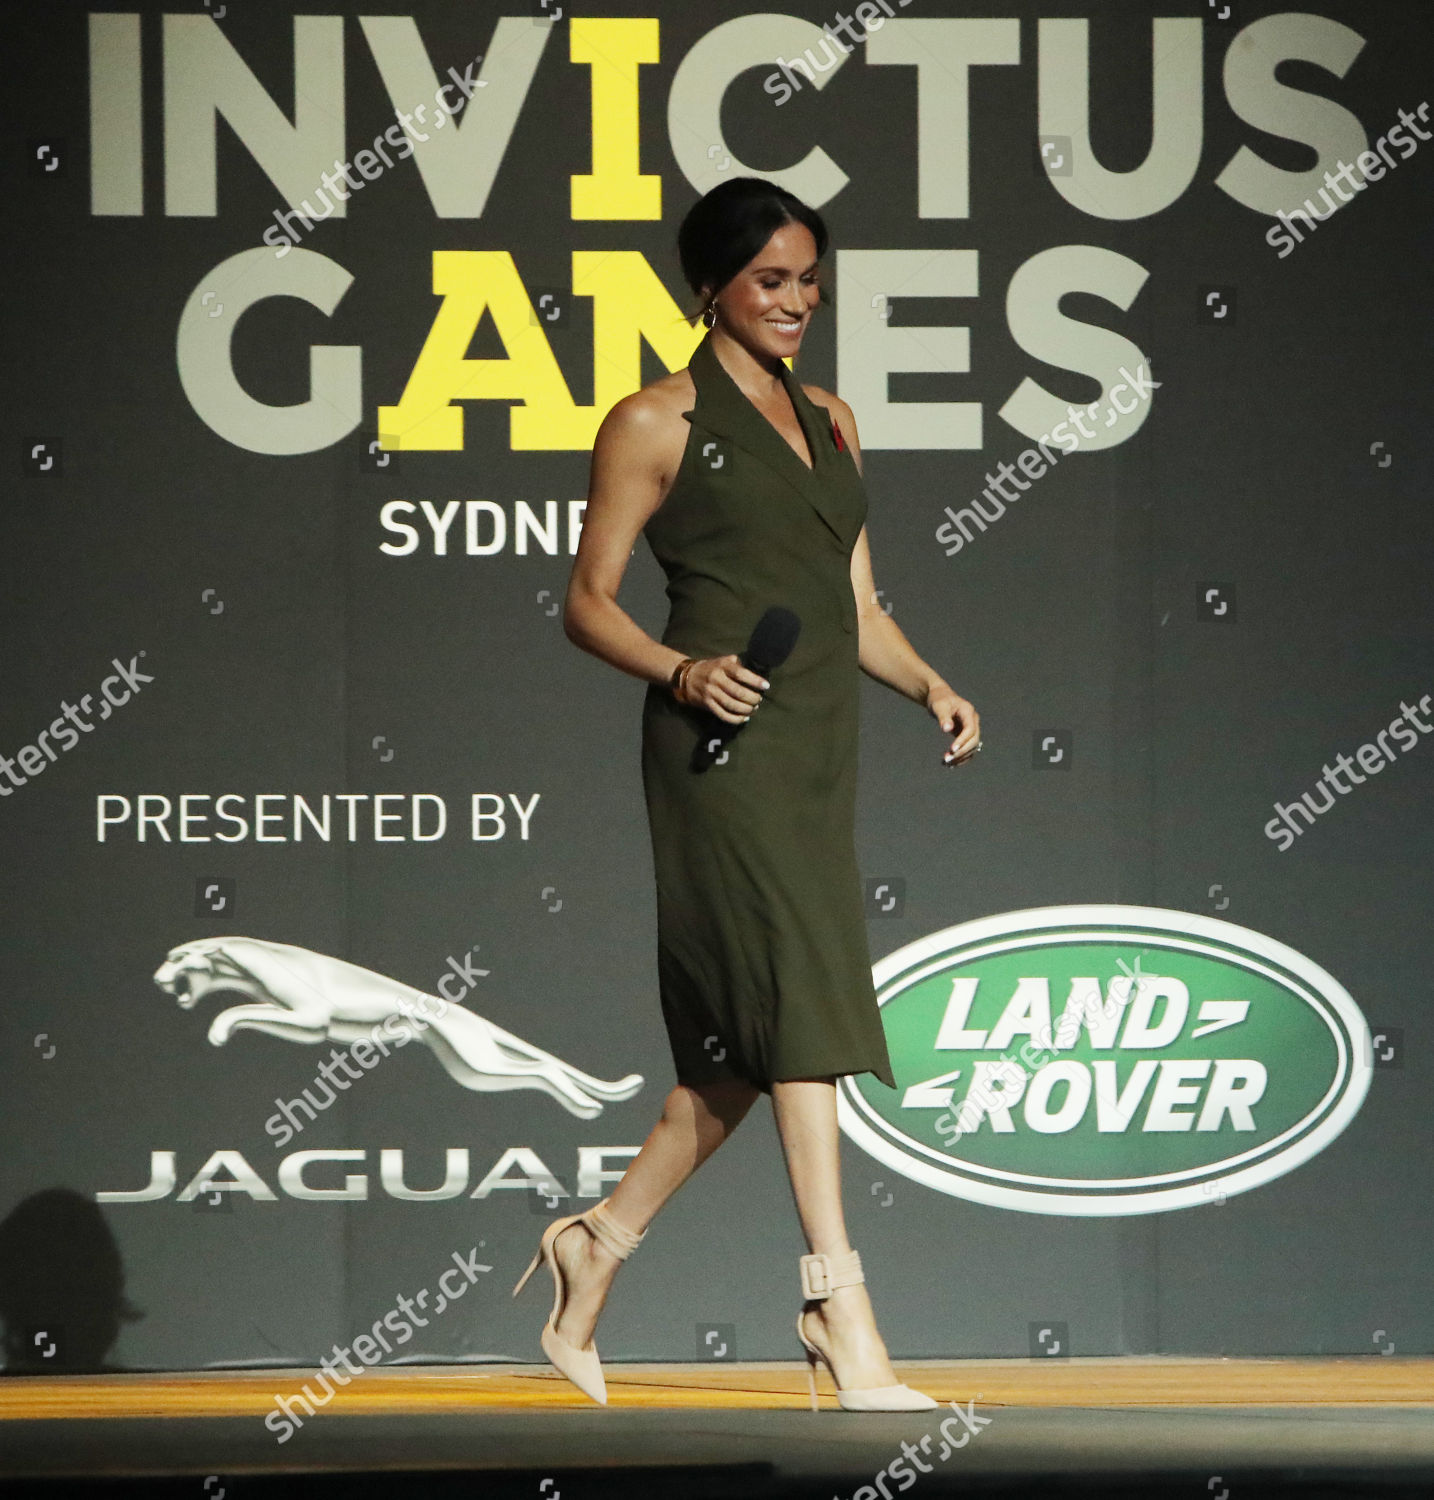 invictus-games-closing-ceremony-sydney-australia-shutterstock-editorial-9946105av.jpg